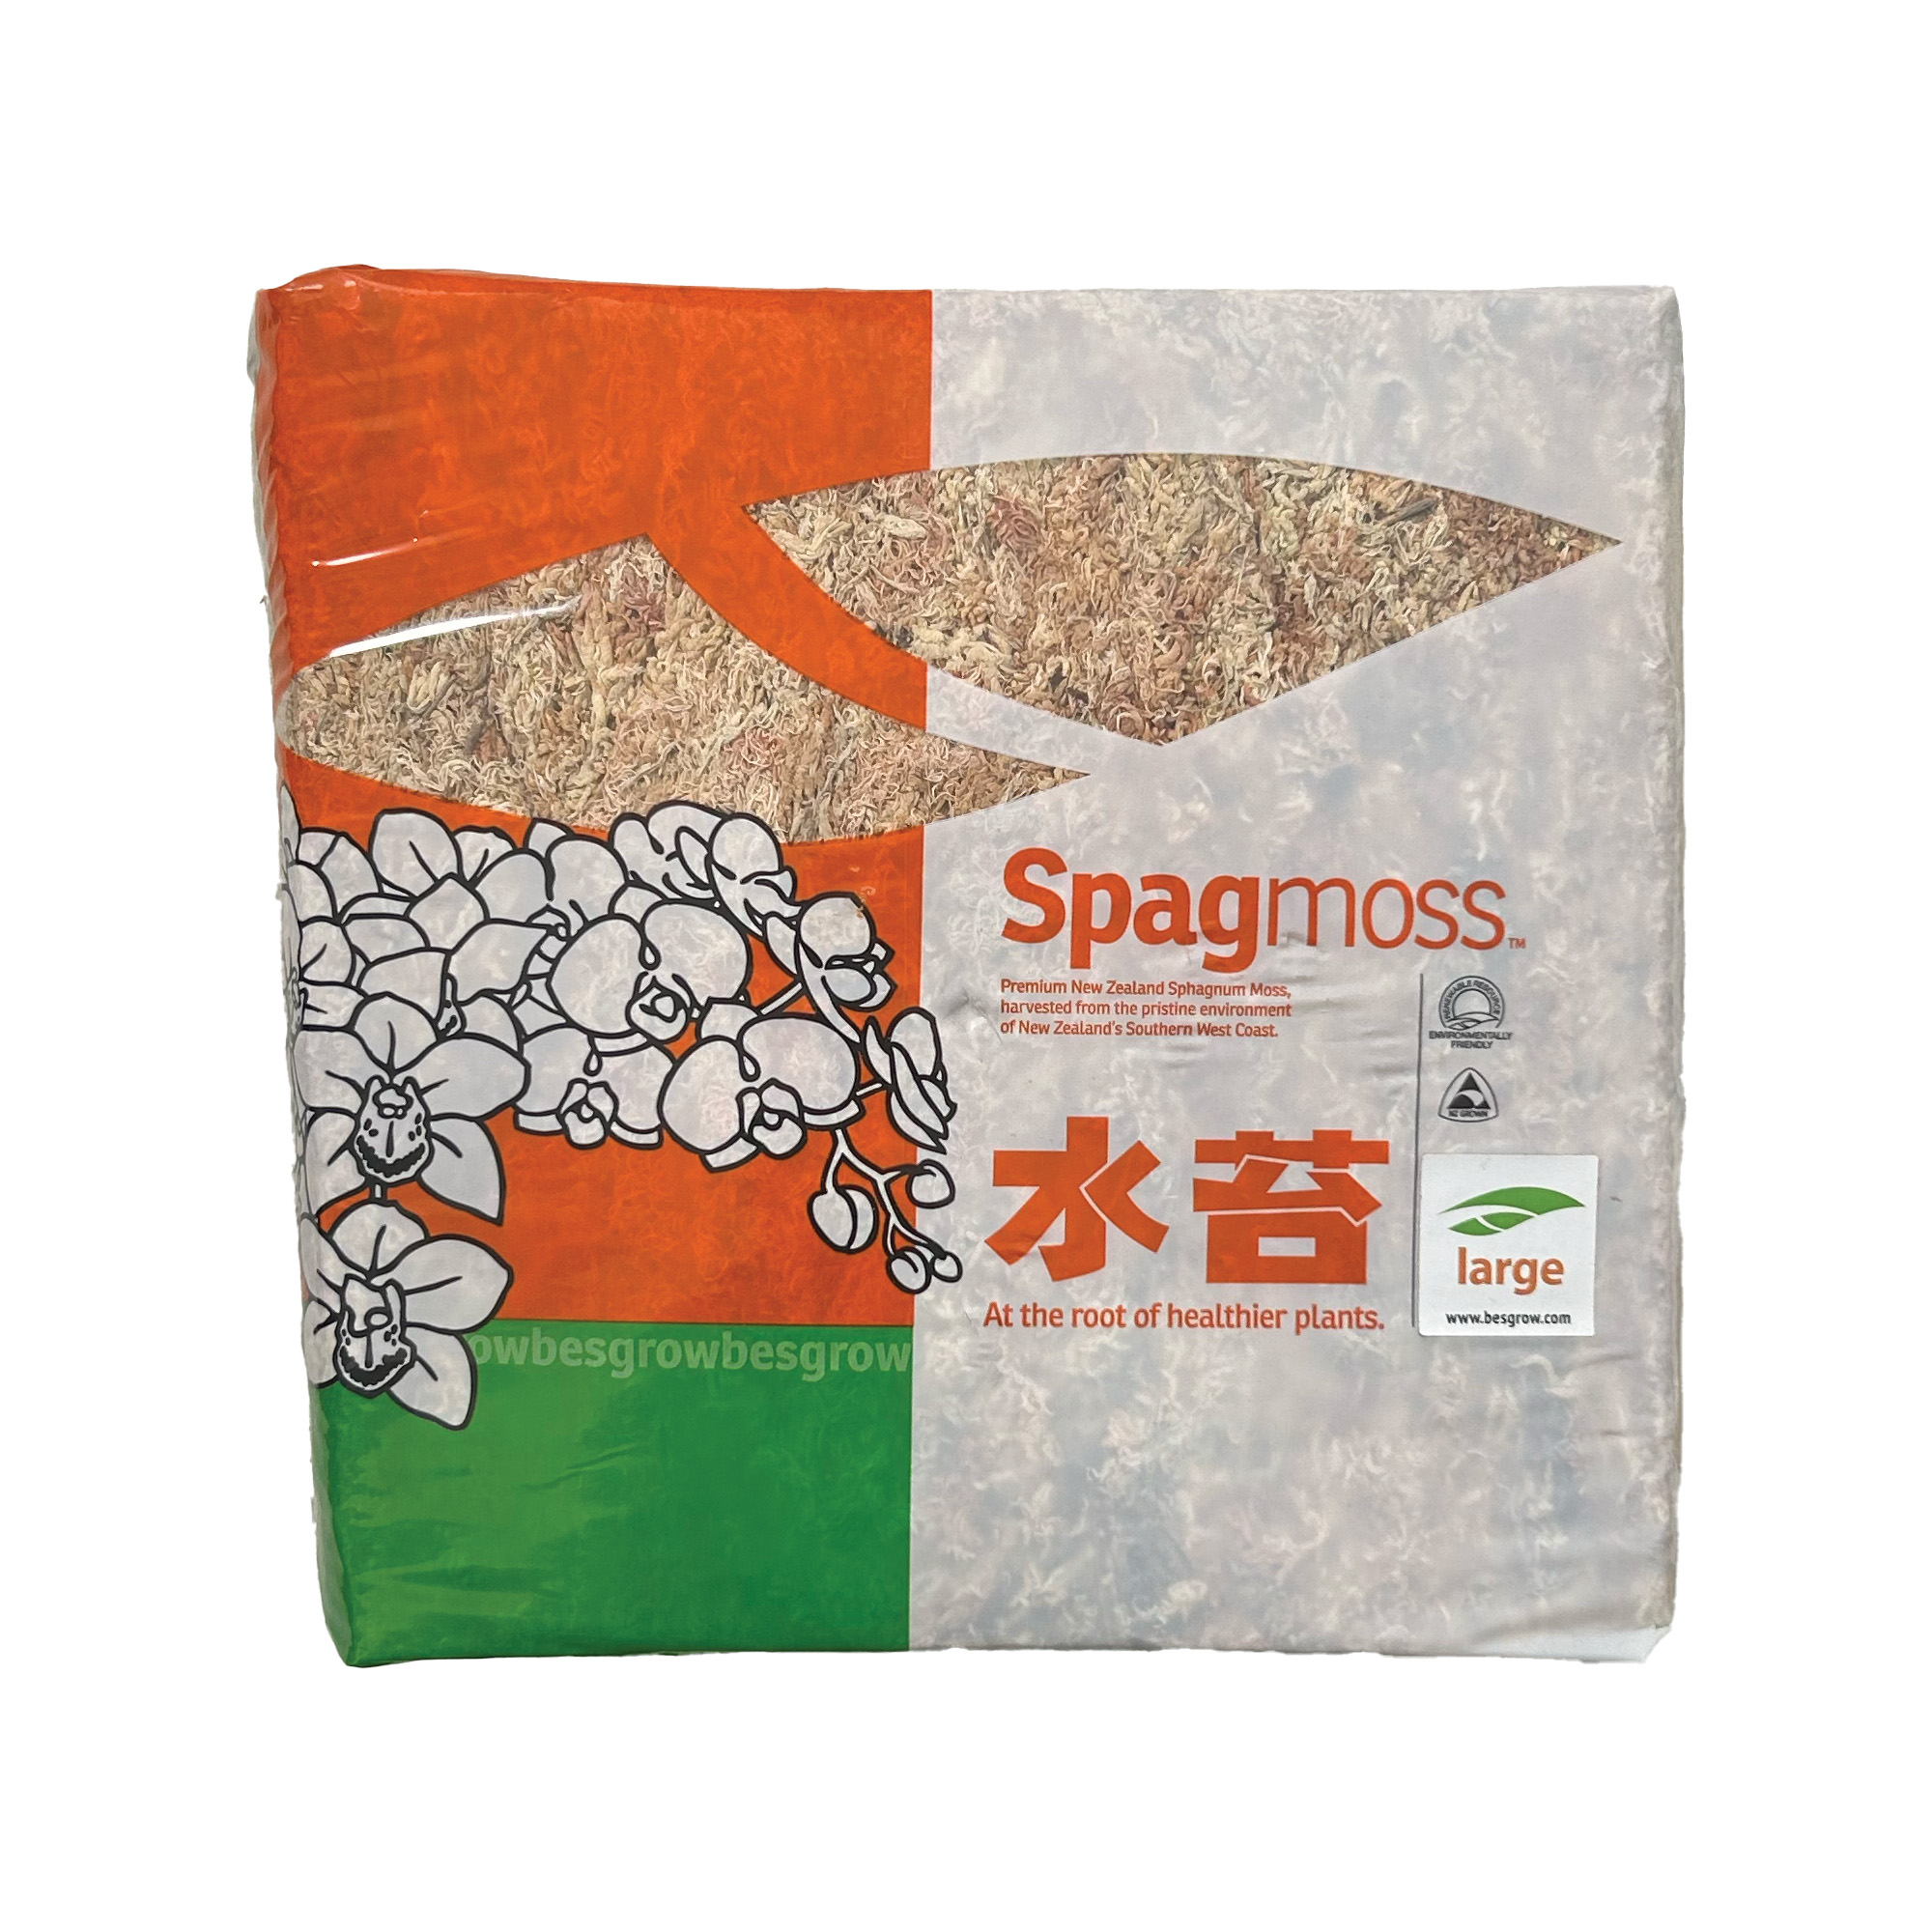 Besgrow Spagmoss sphagnum moss